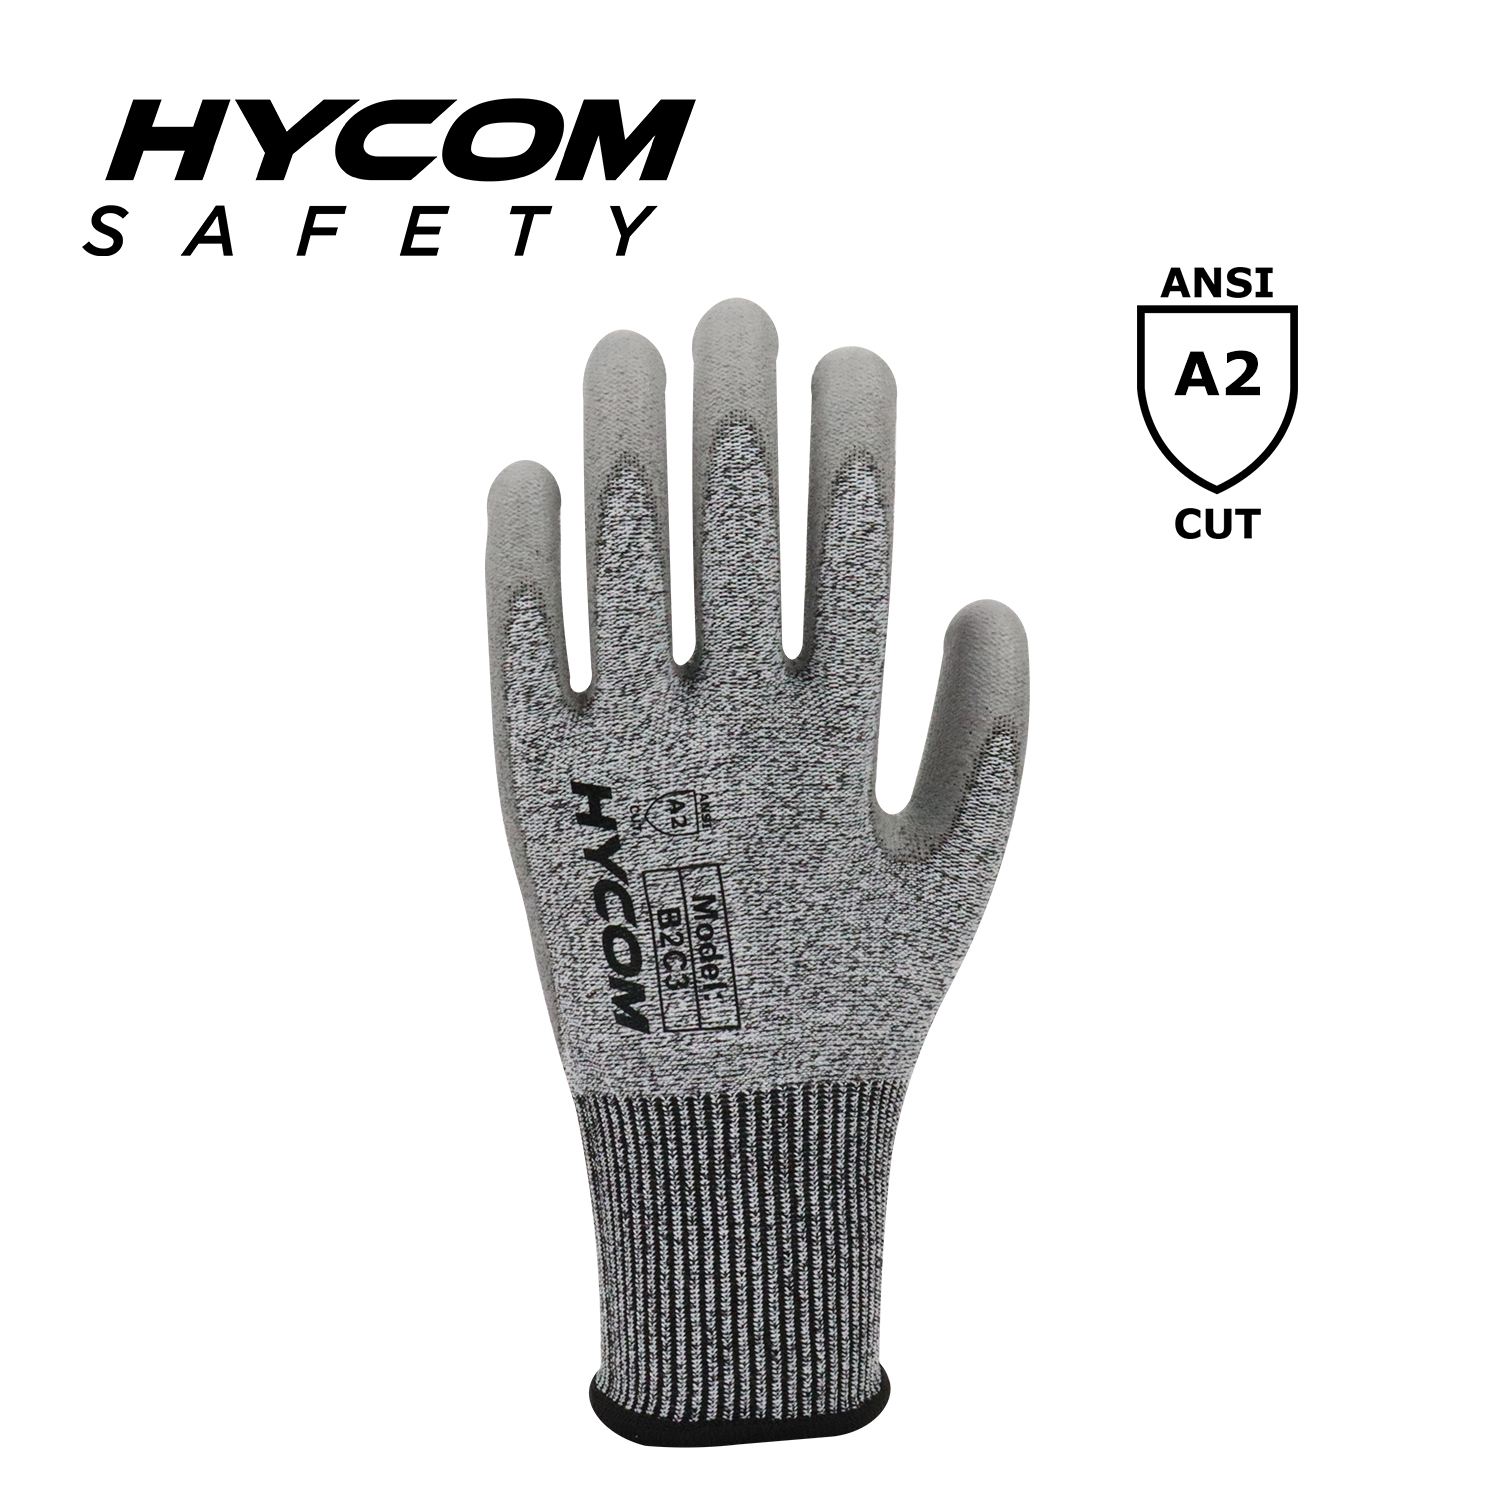 HYCOM 13G ANSI 2 Cut Level 3 Schnittfester Handschuh mit Handflächen-Polyurethan-Beschichtung. PSA-Handschuhe